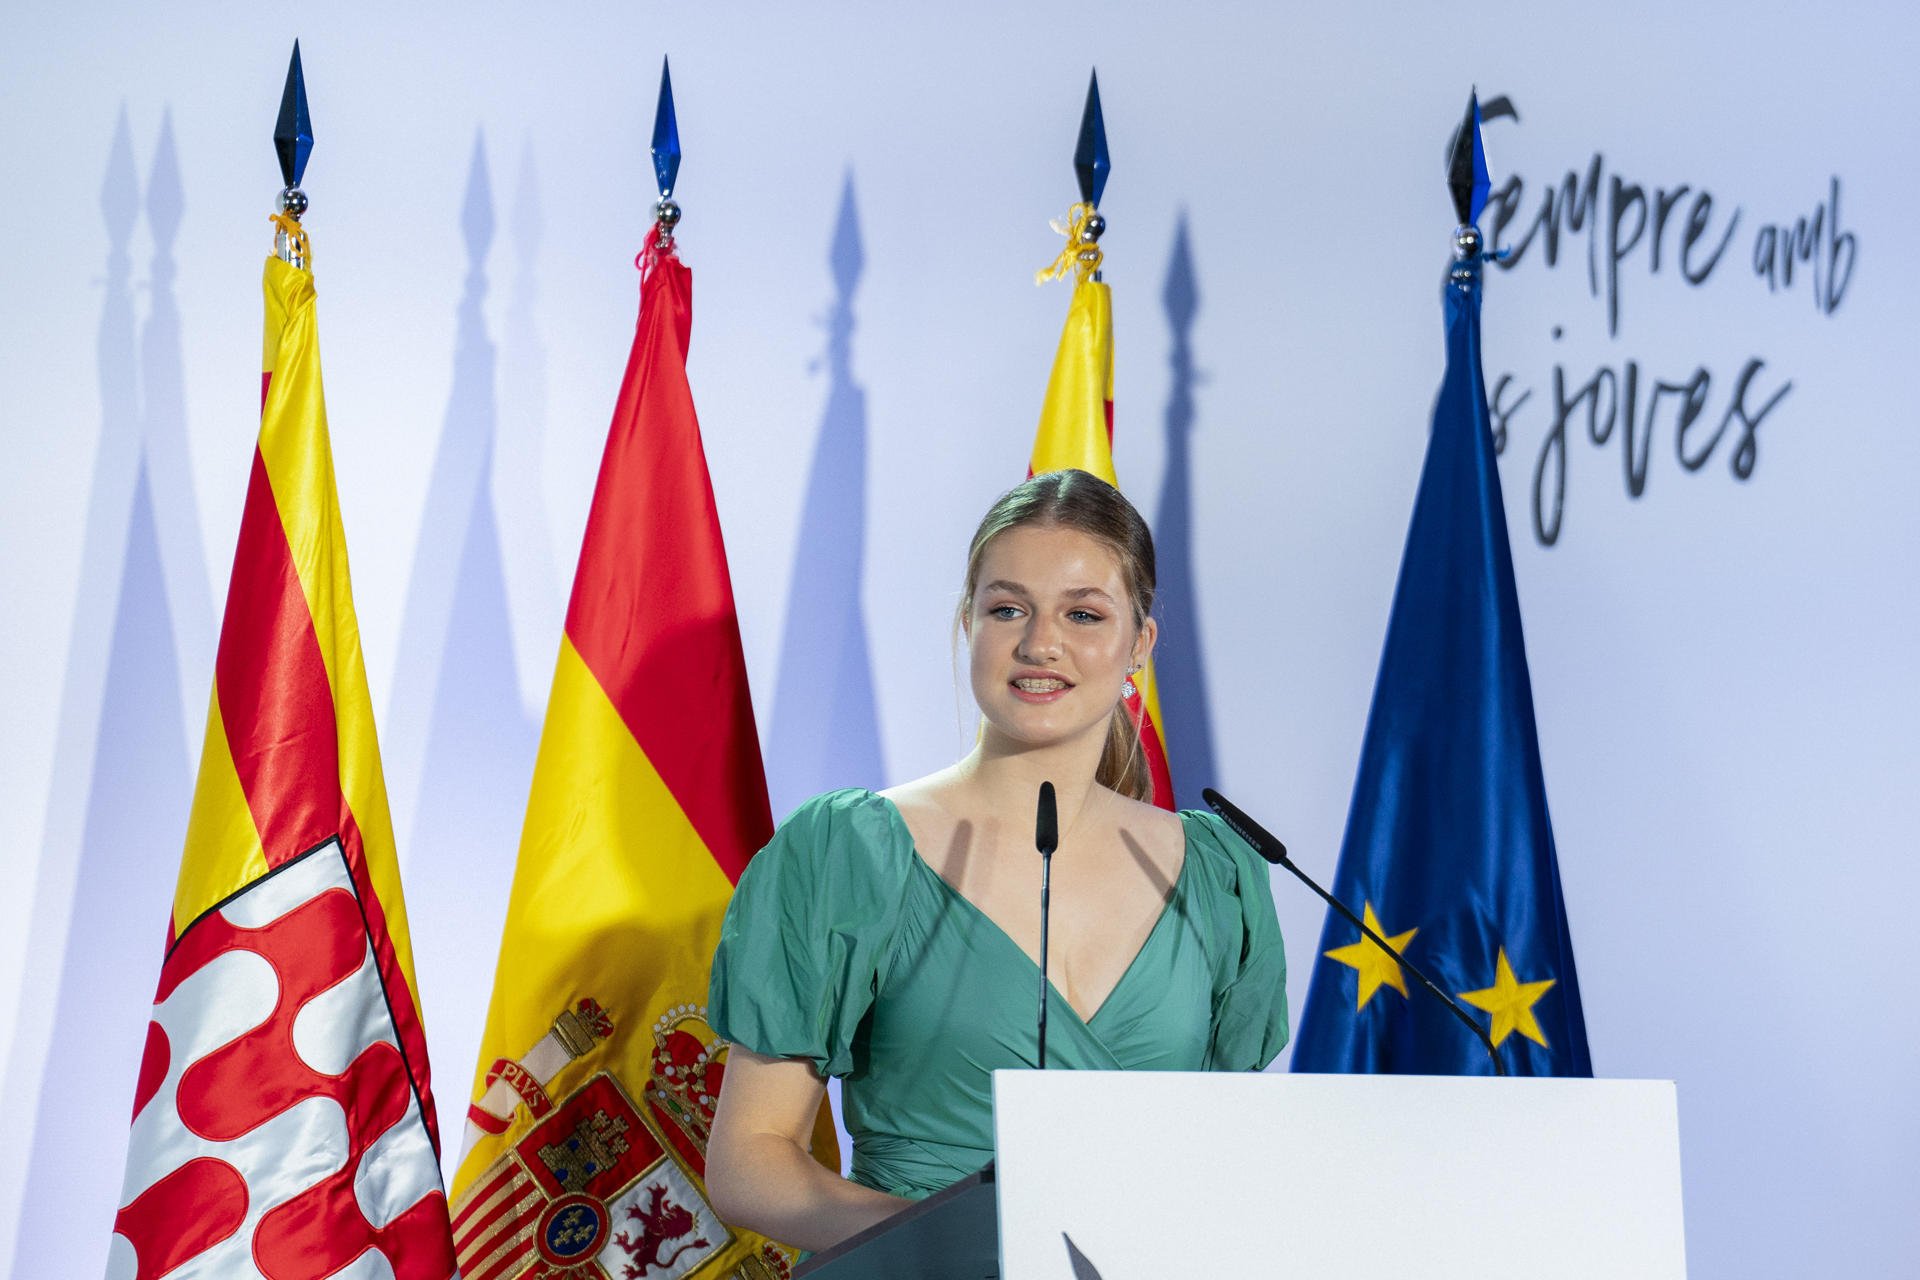 La princesa Leonor exalta a las fuerzas armadas españolas en su discurso en Girona